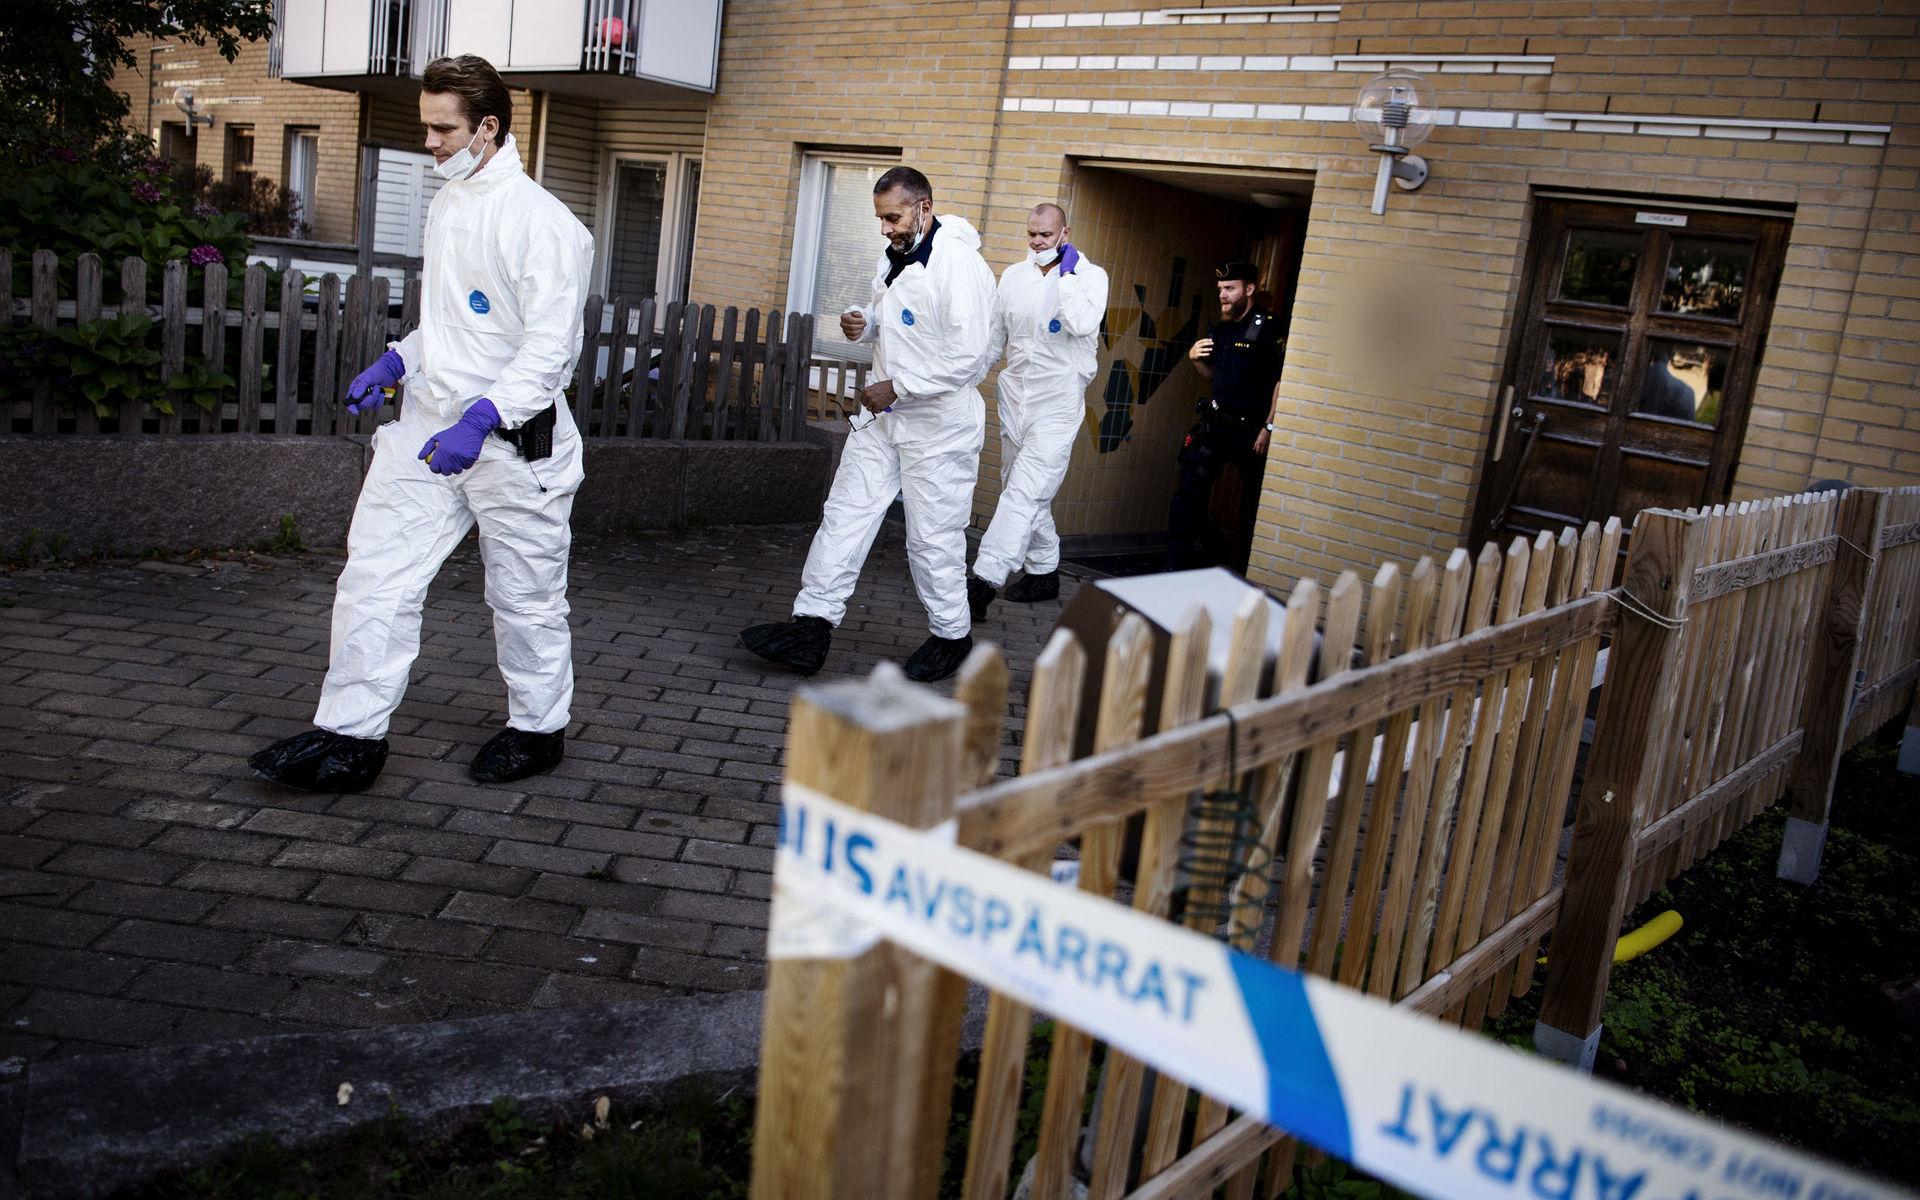 Polis och tekniker kommer ut ur lägenheten. Misstänkt trippelmord i Tynnered, Göteborg